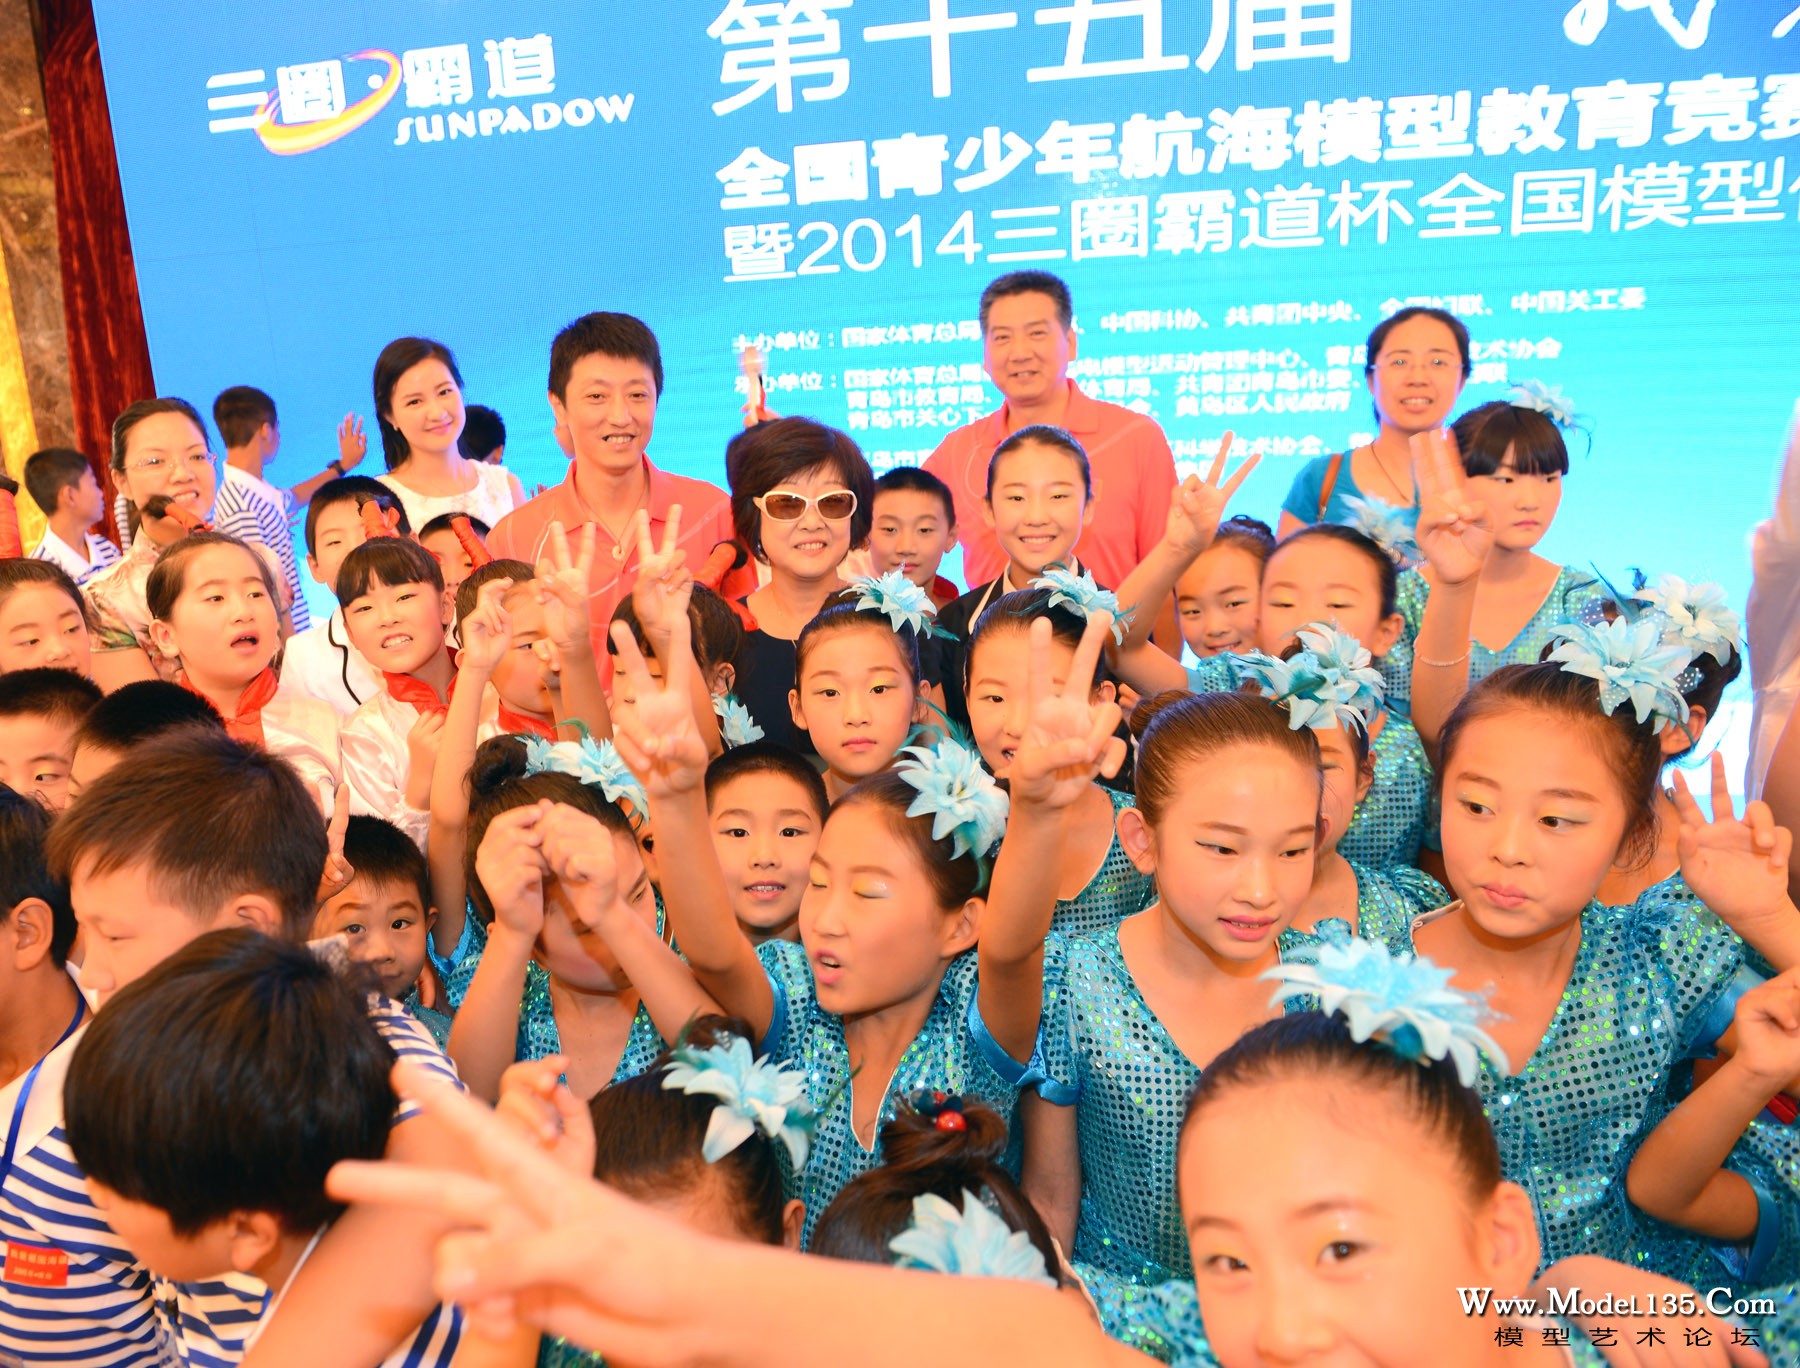 开幕仪式的总导演刘振华老师被欢乐的孩子簇拥着.jpg